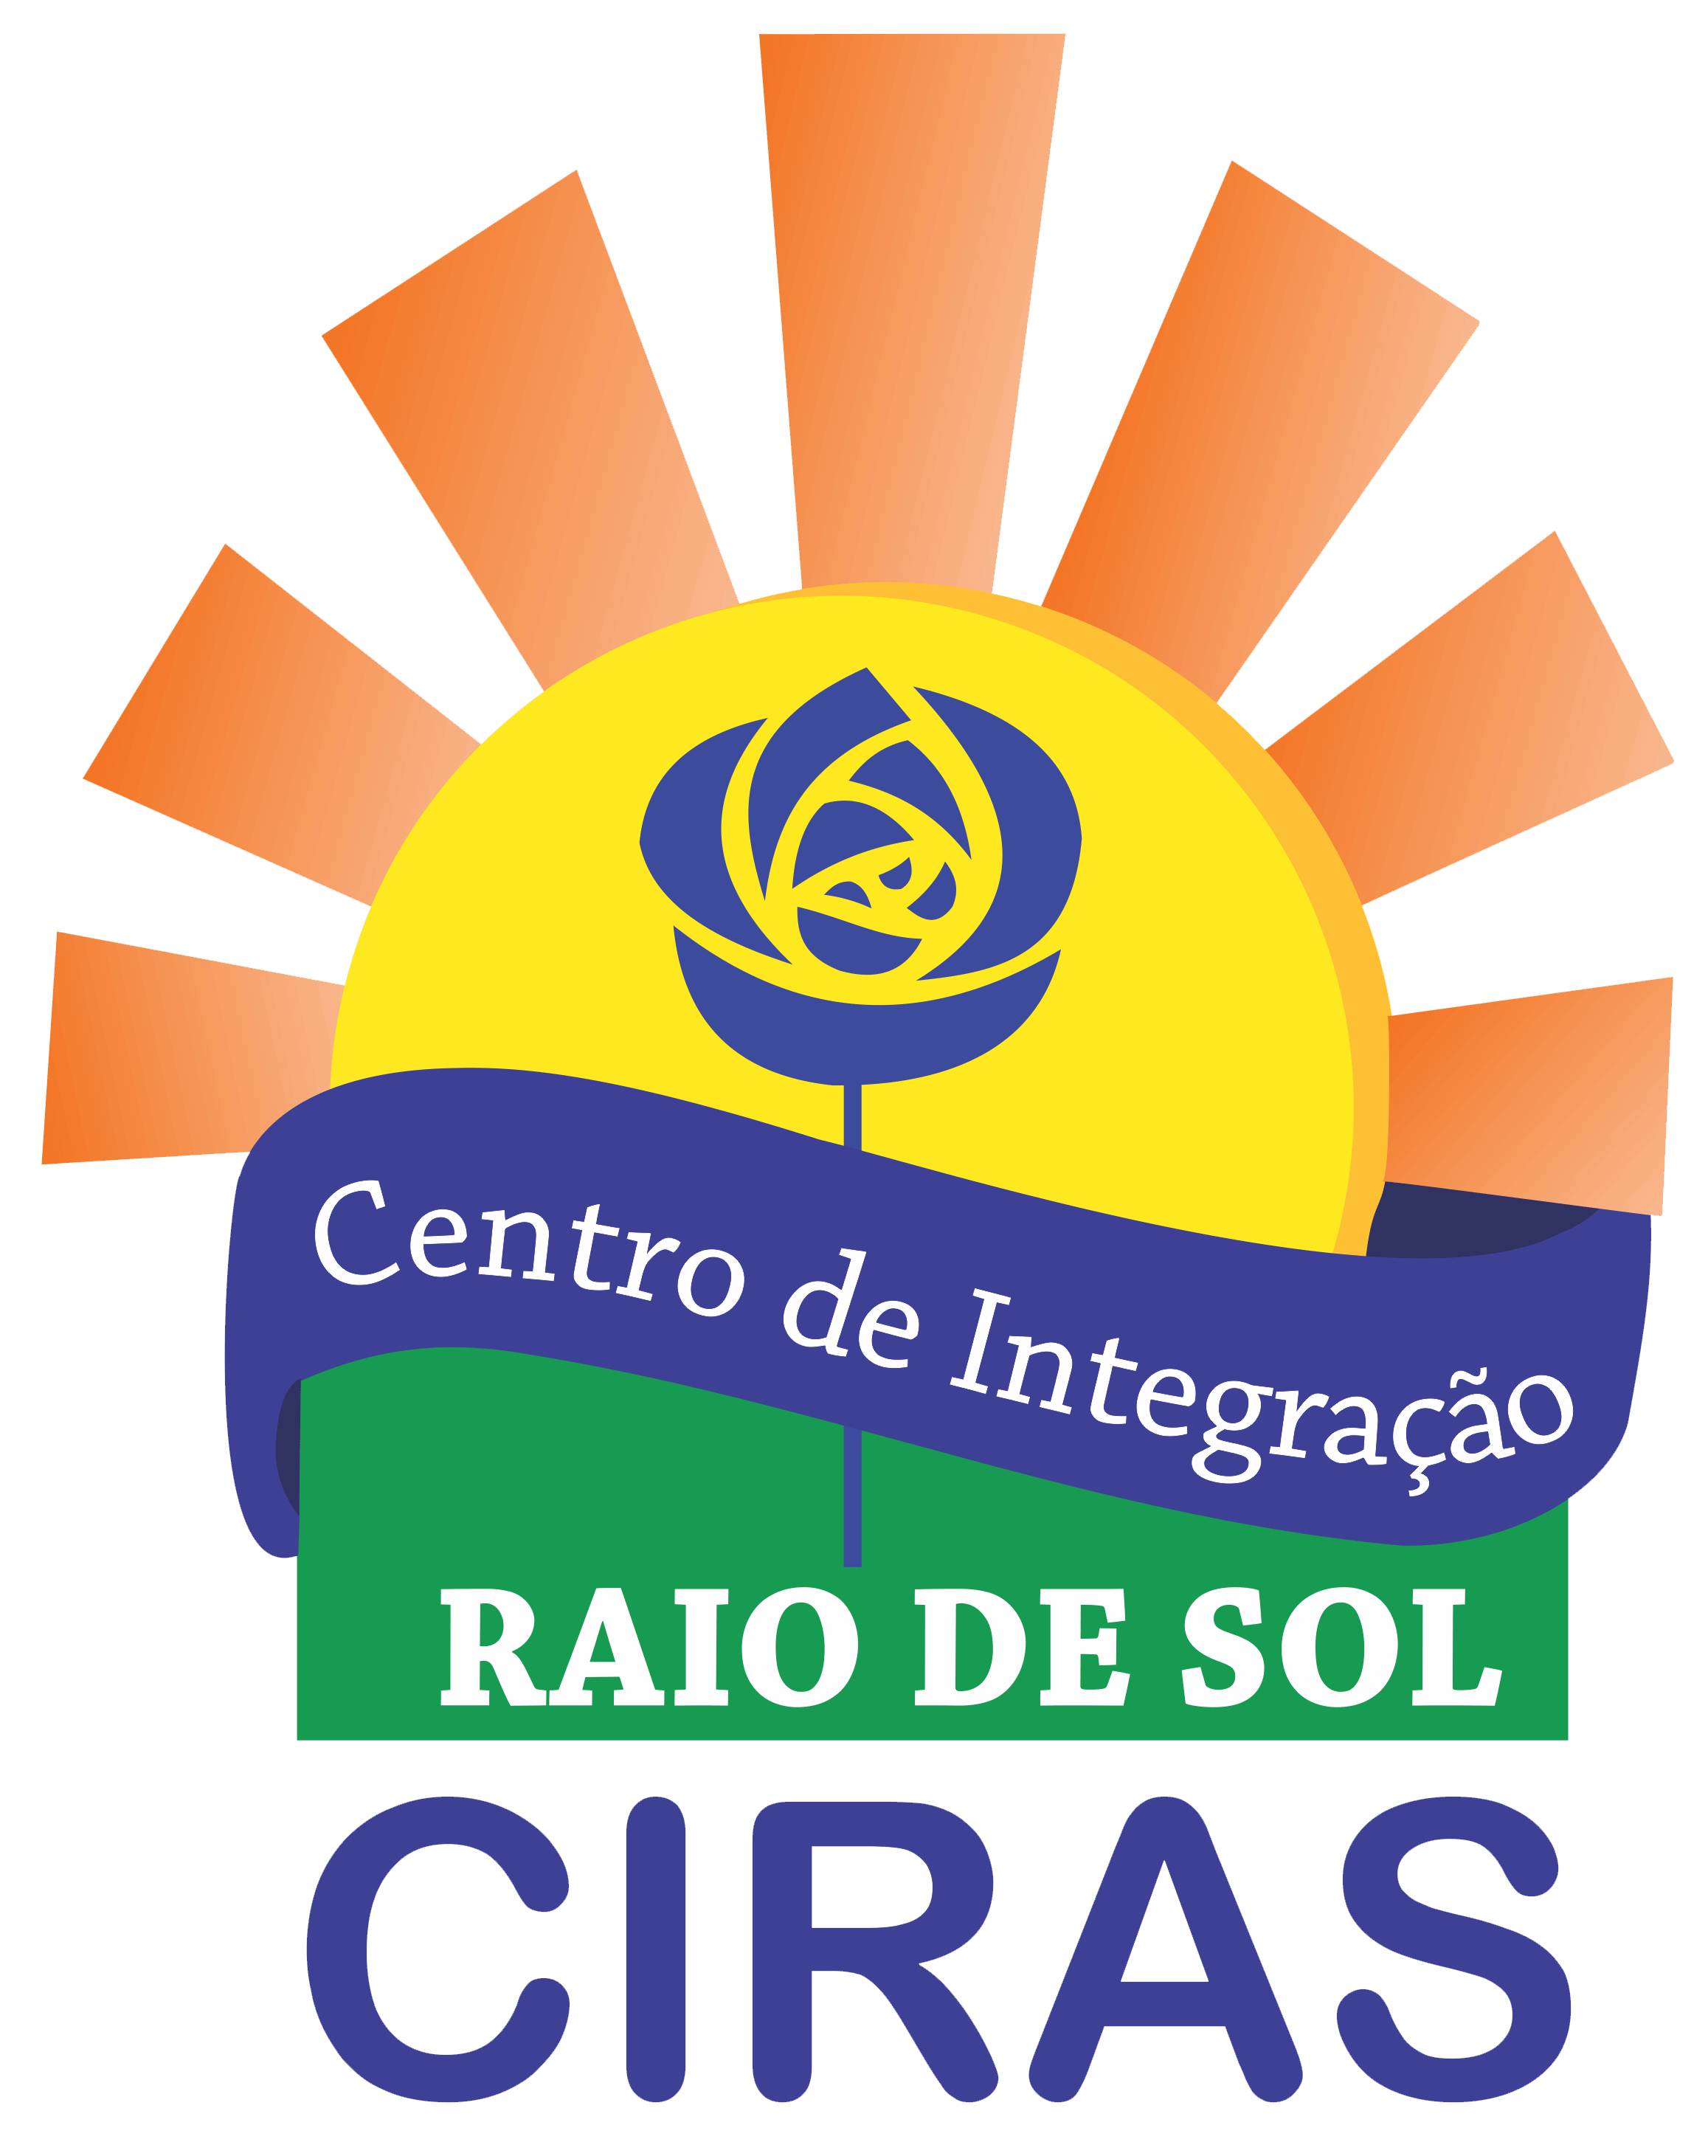 Image of CIRAS